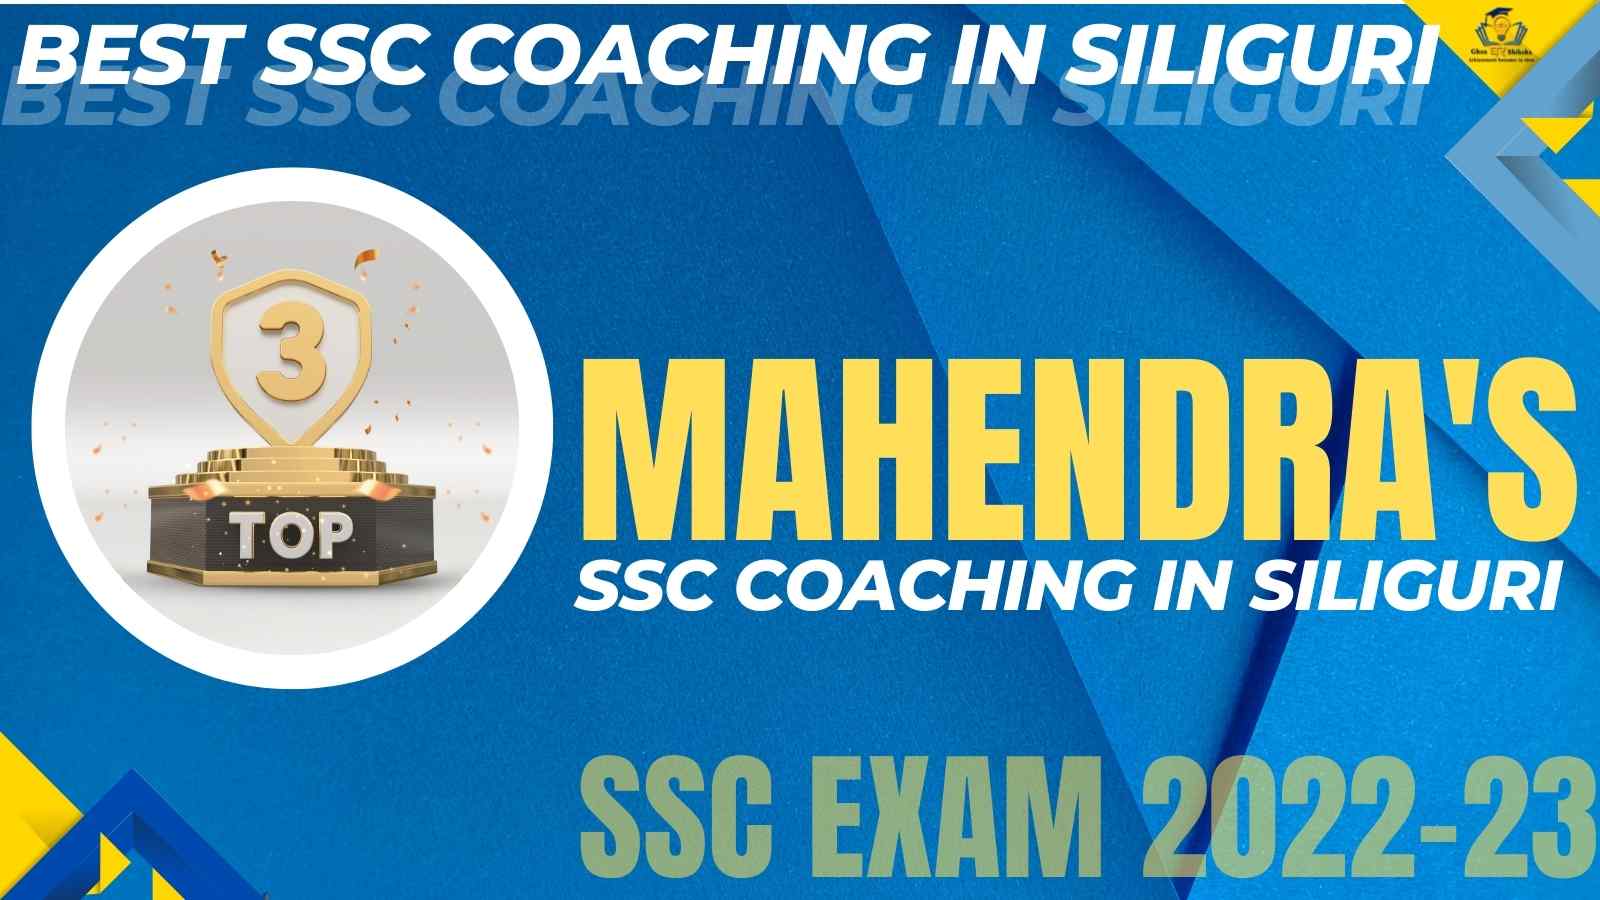 Top SSC Coaching Institute In Siliguri